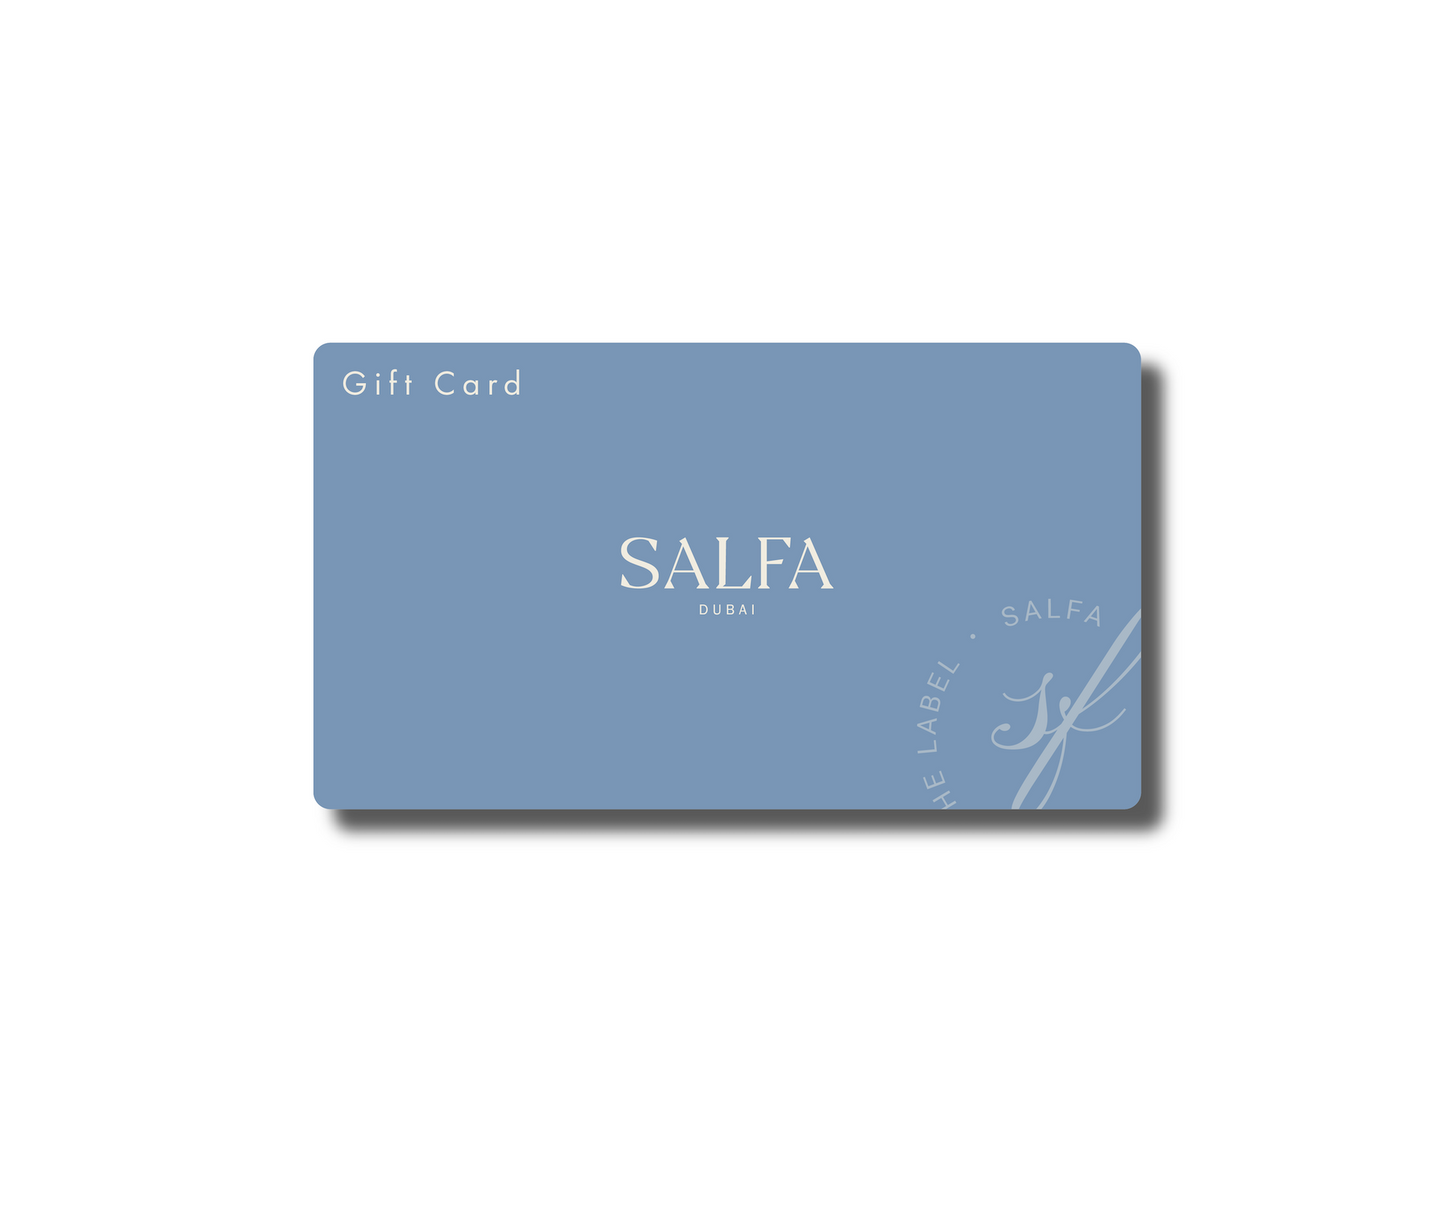 SALFA Gift Card